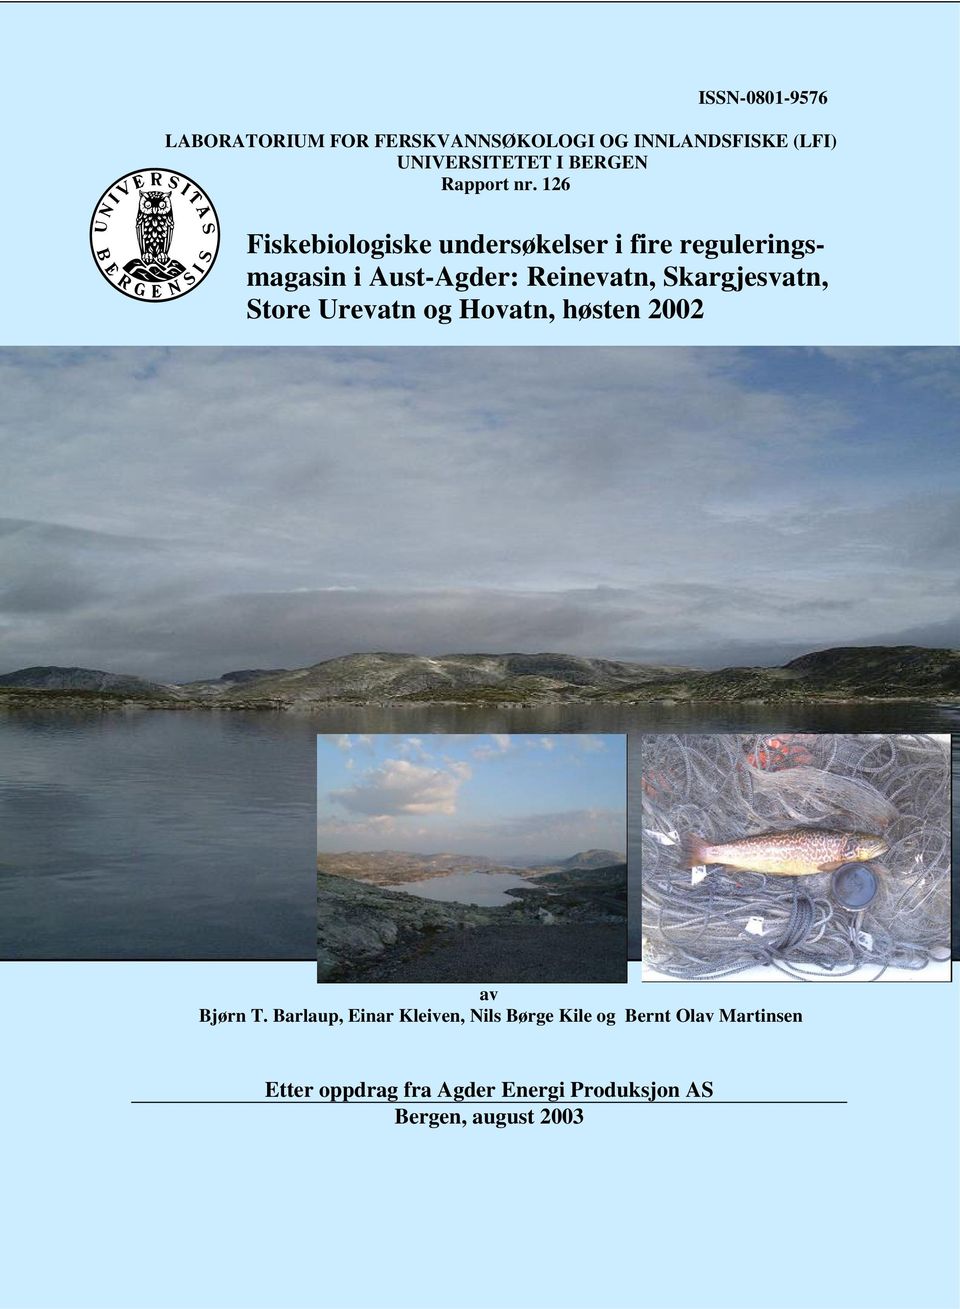 26 Fiskebiologiske undersøkelser i fire reguleringsmagasin i Aust-Agder: Reinevatn,